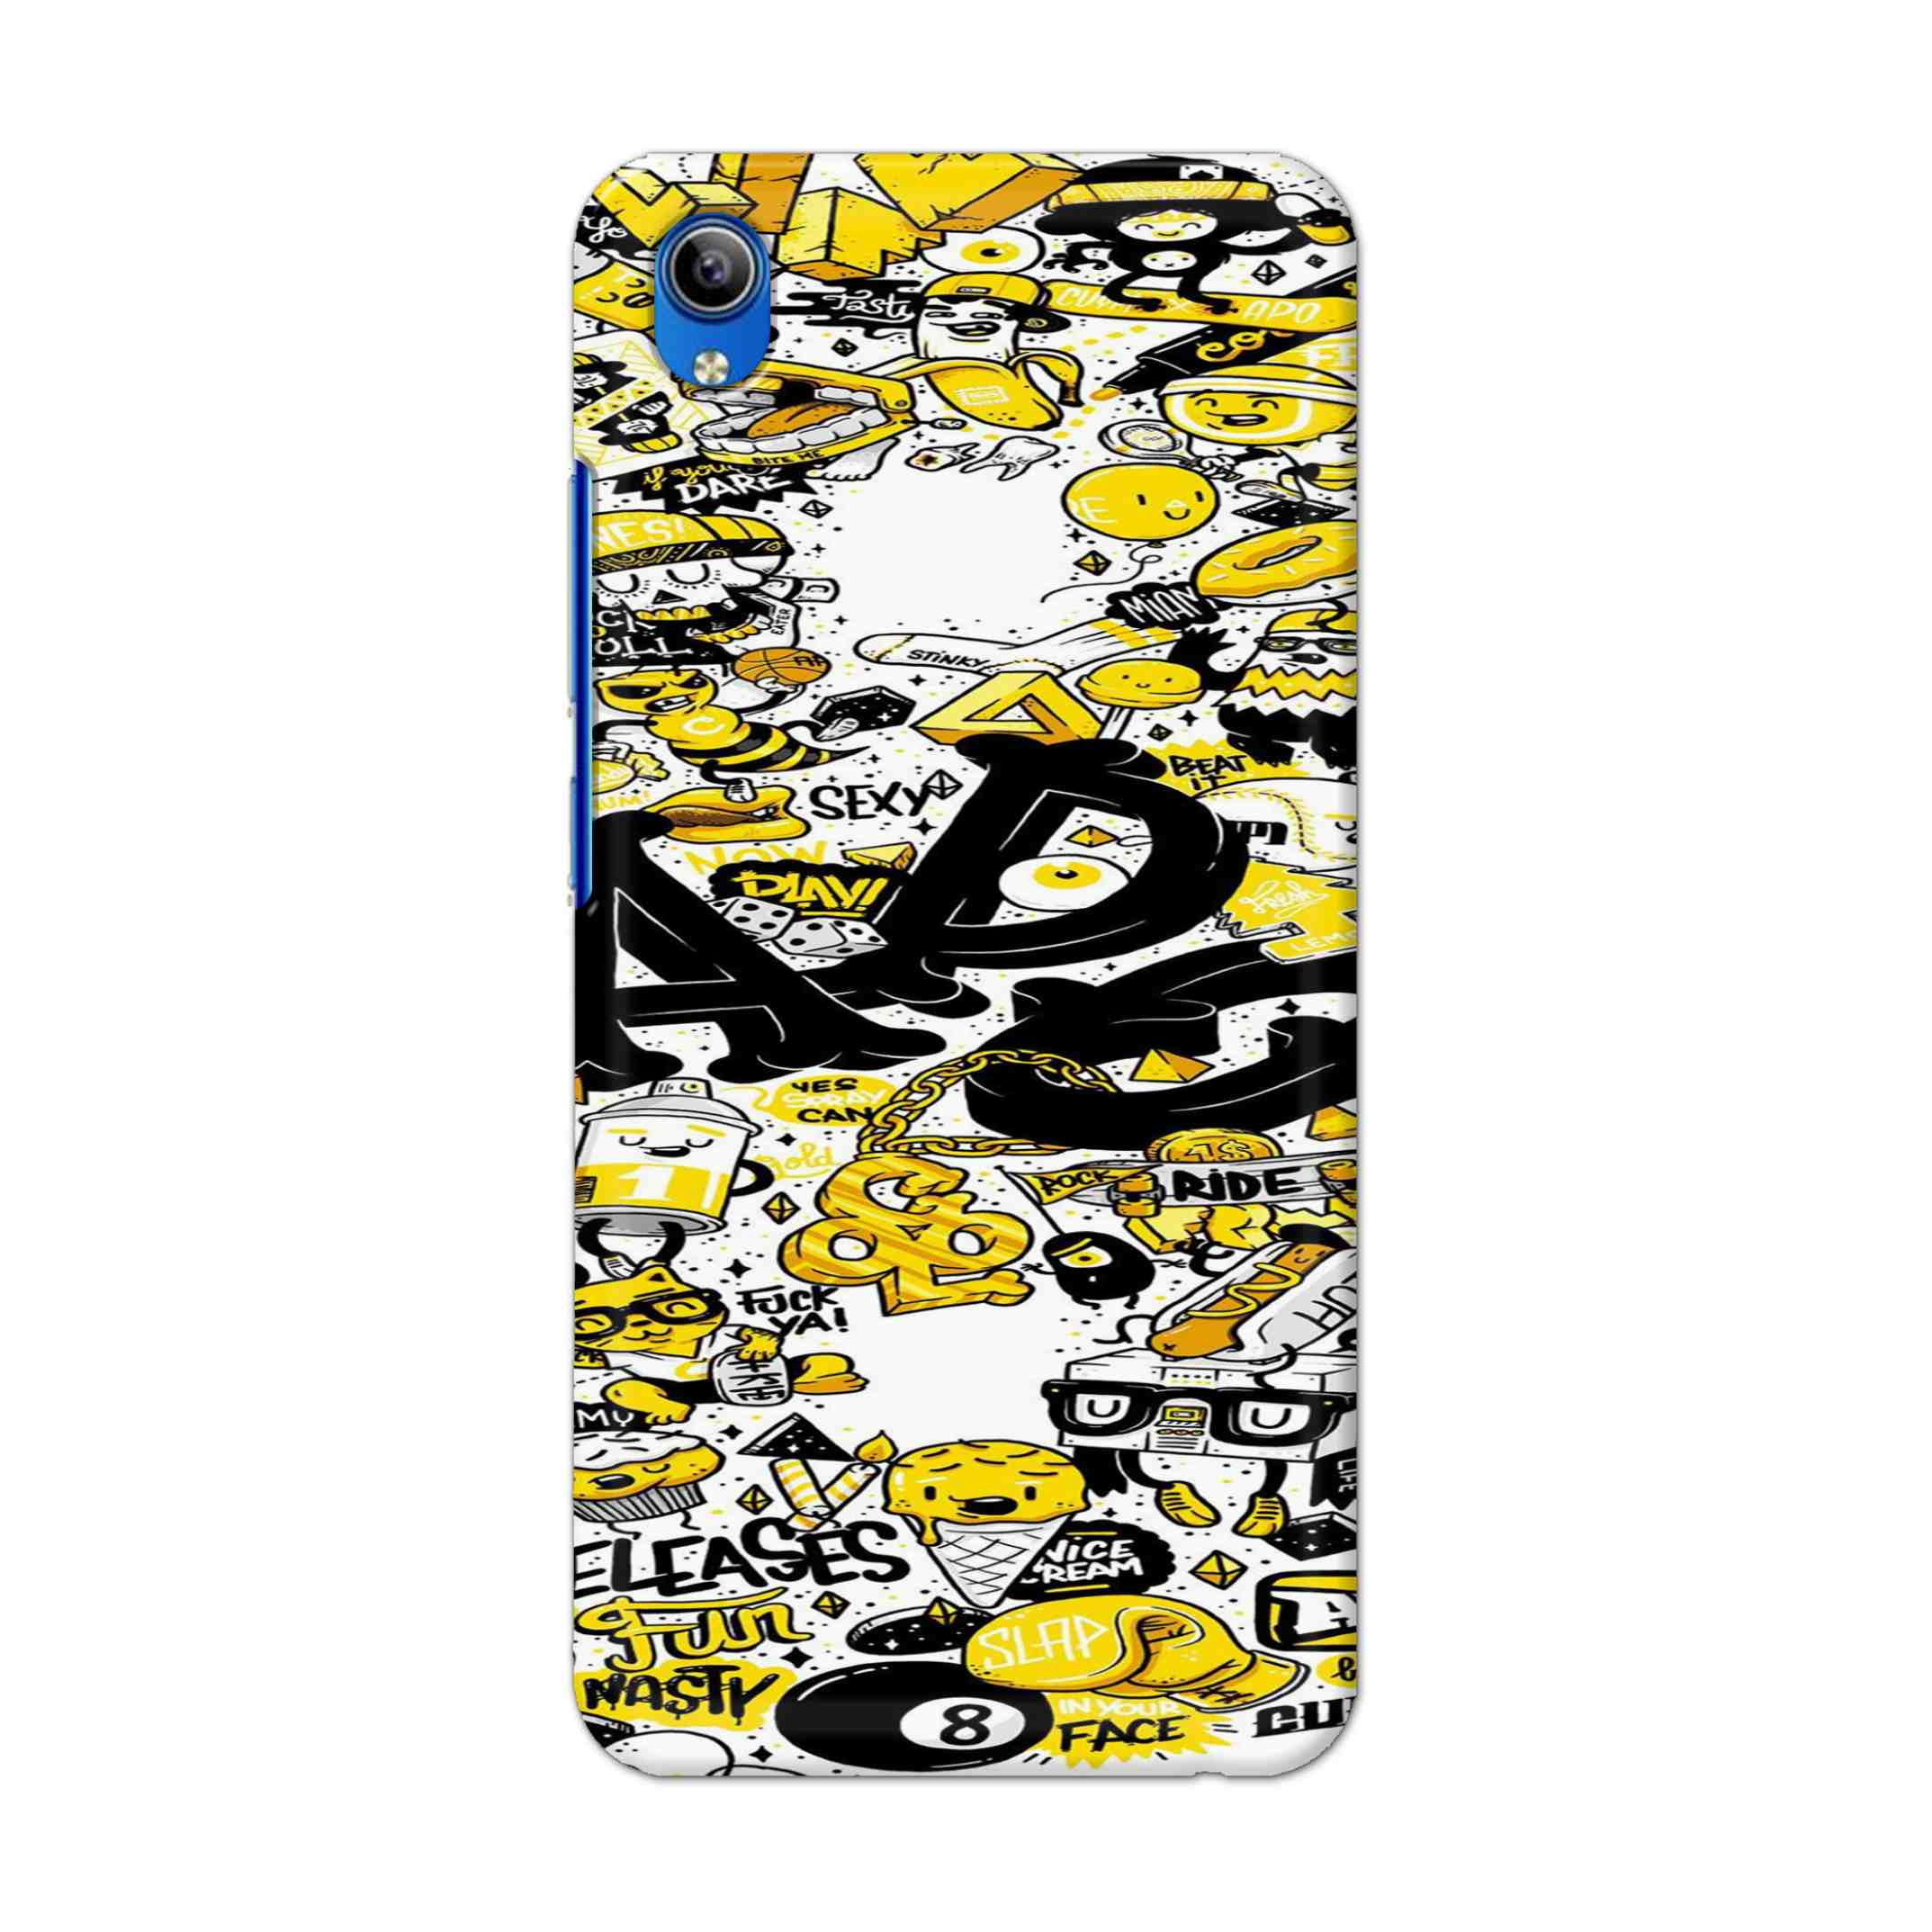 Buy Ado Hard Back Mobile Phone Case Cover For Vivo Y91i Online